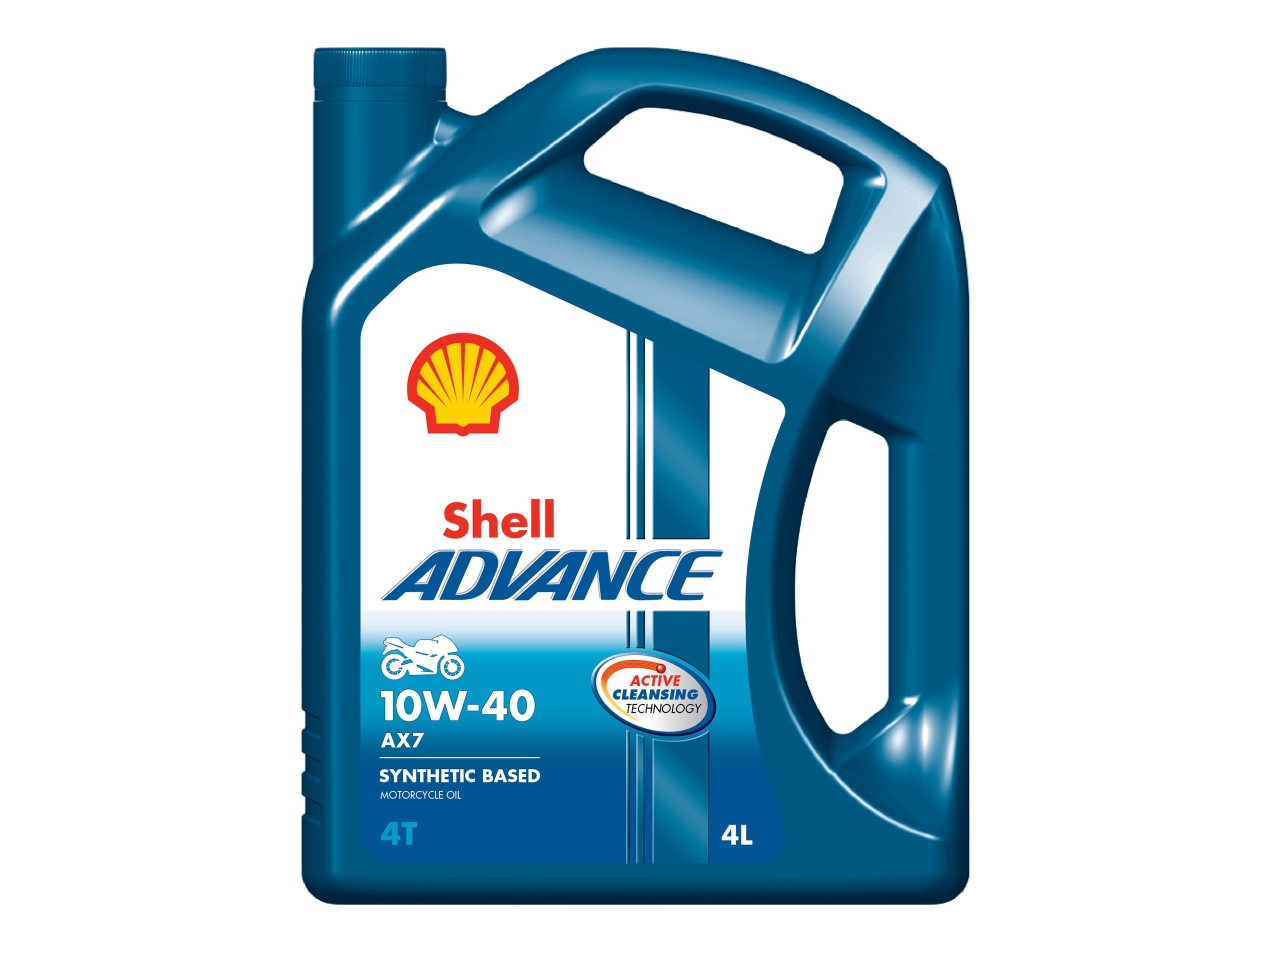 Shell Advance 4T AX7 10W-40 motorbike oil 4L